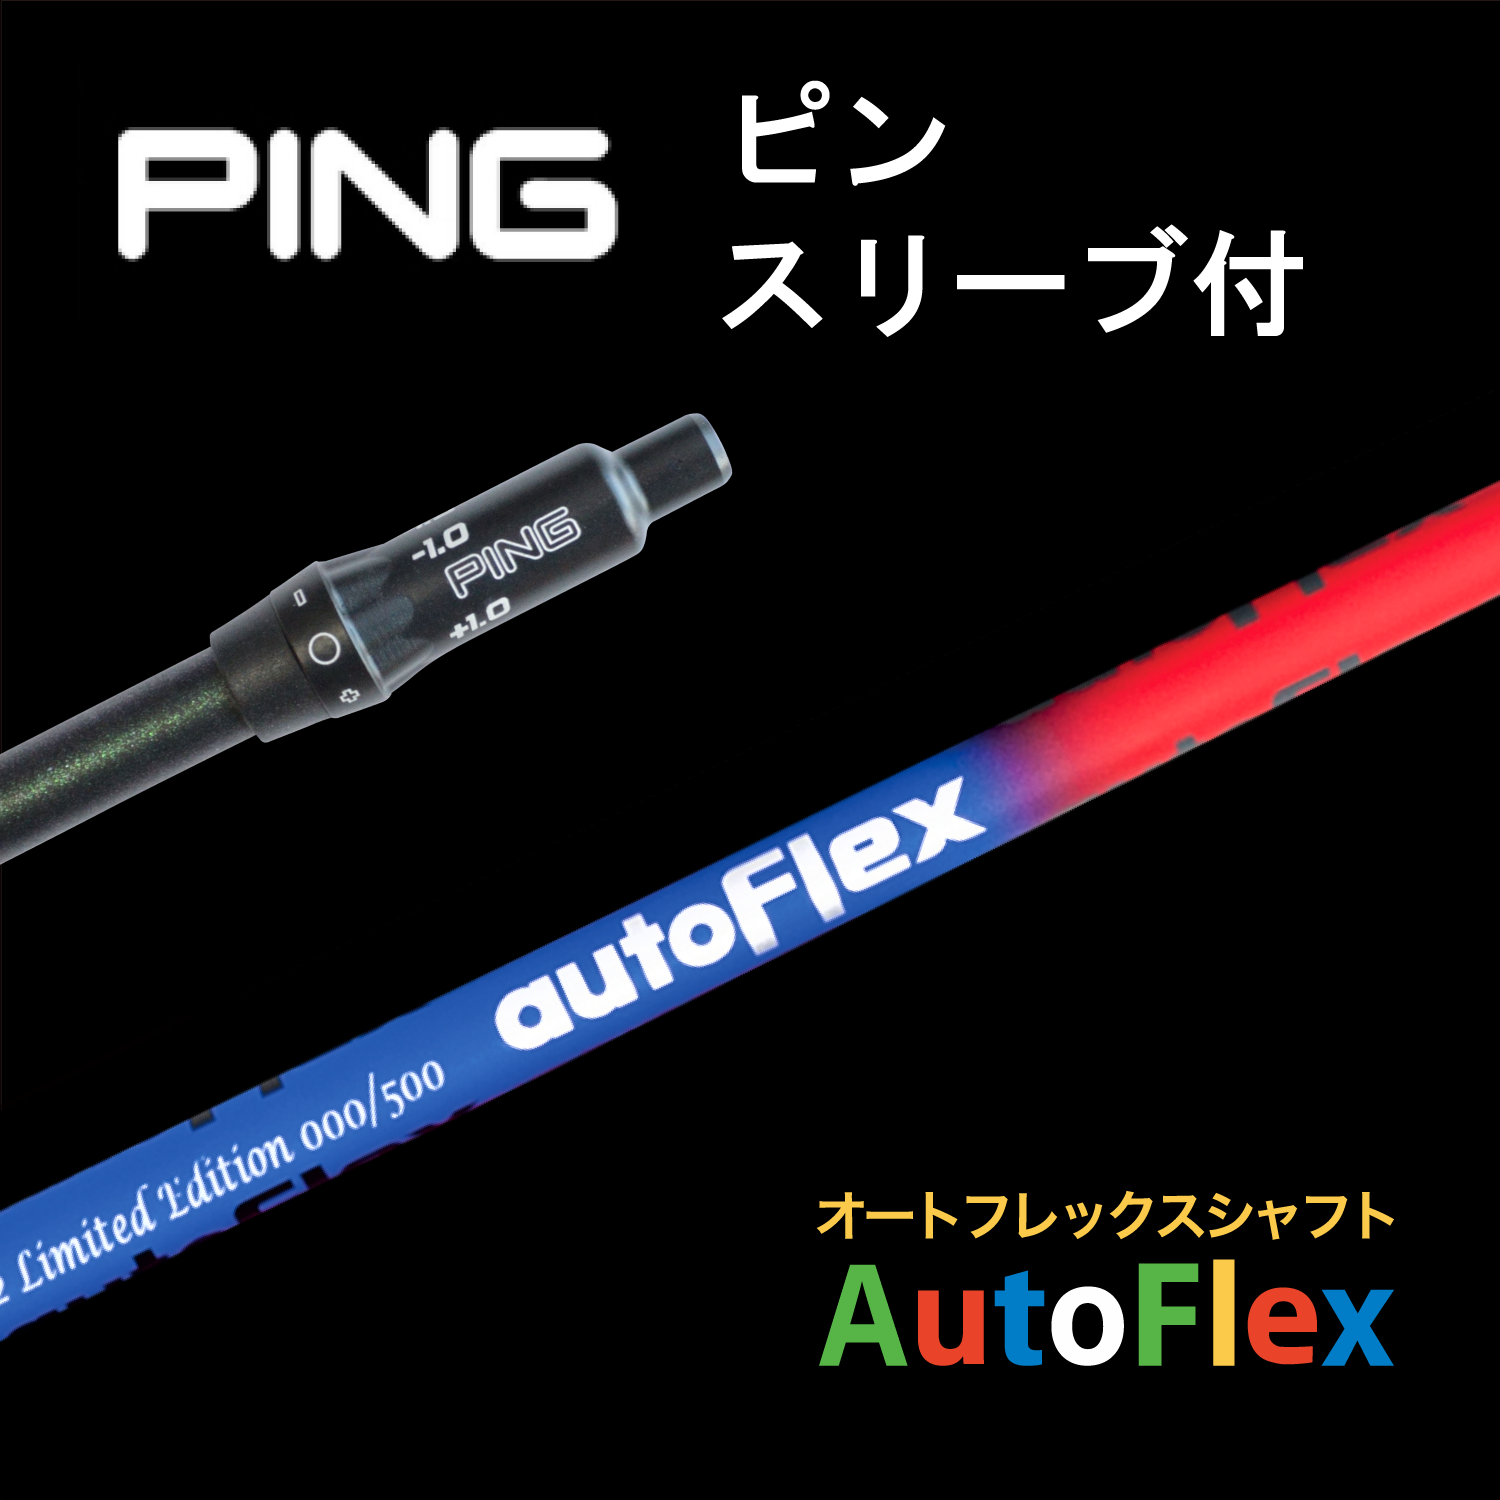 【公式ストア】AutoFlex Shaft 限定版 Limited Edition PINGスリーブ